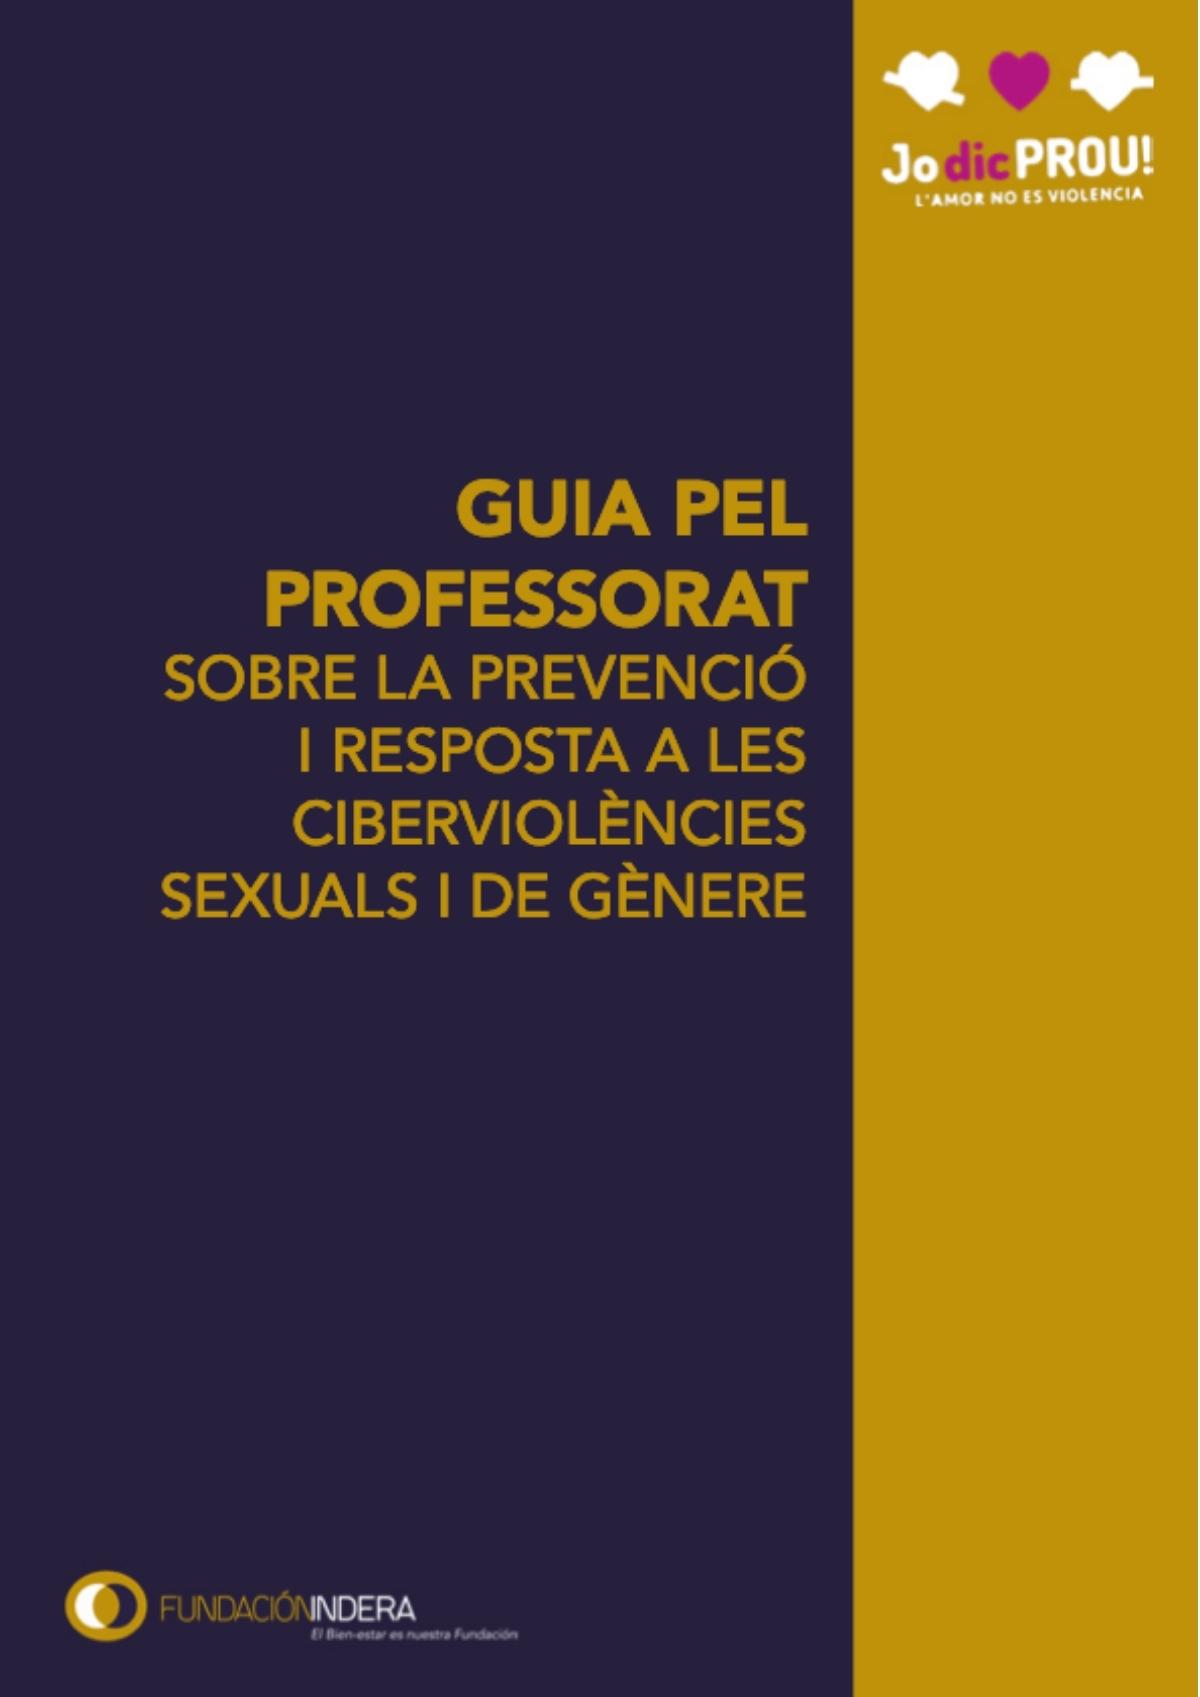 GUIA PEL PROFESSORAT Sobre la prevenció i reposta a les cibervioléncies sexuals i de génere